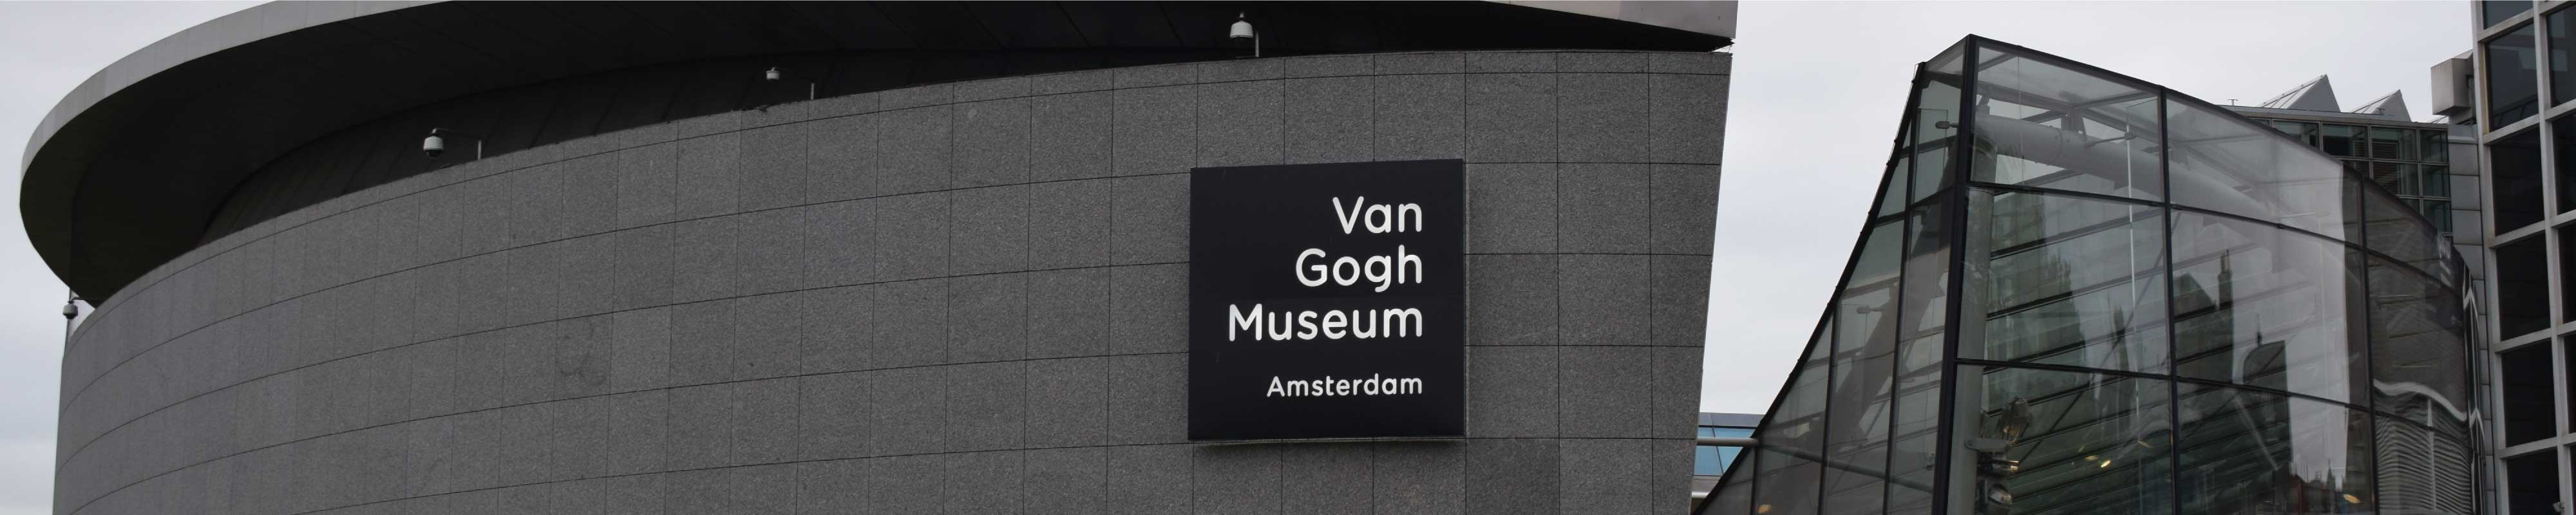 Gepäckaufbewahrung | Van Gogh Museum in Amsterdam - Nannybag